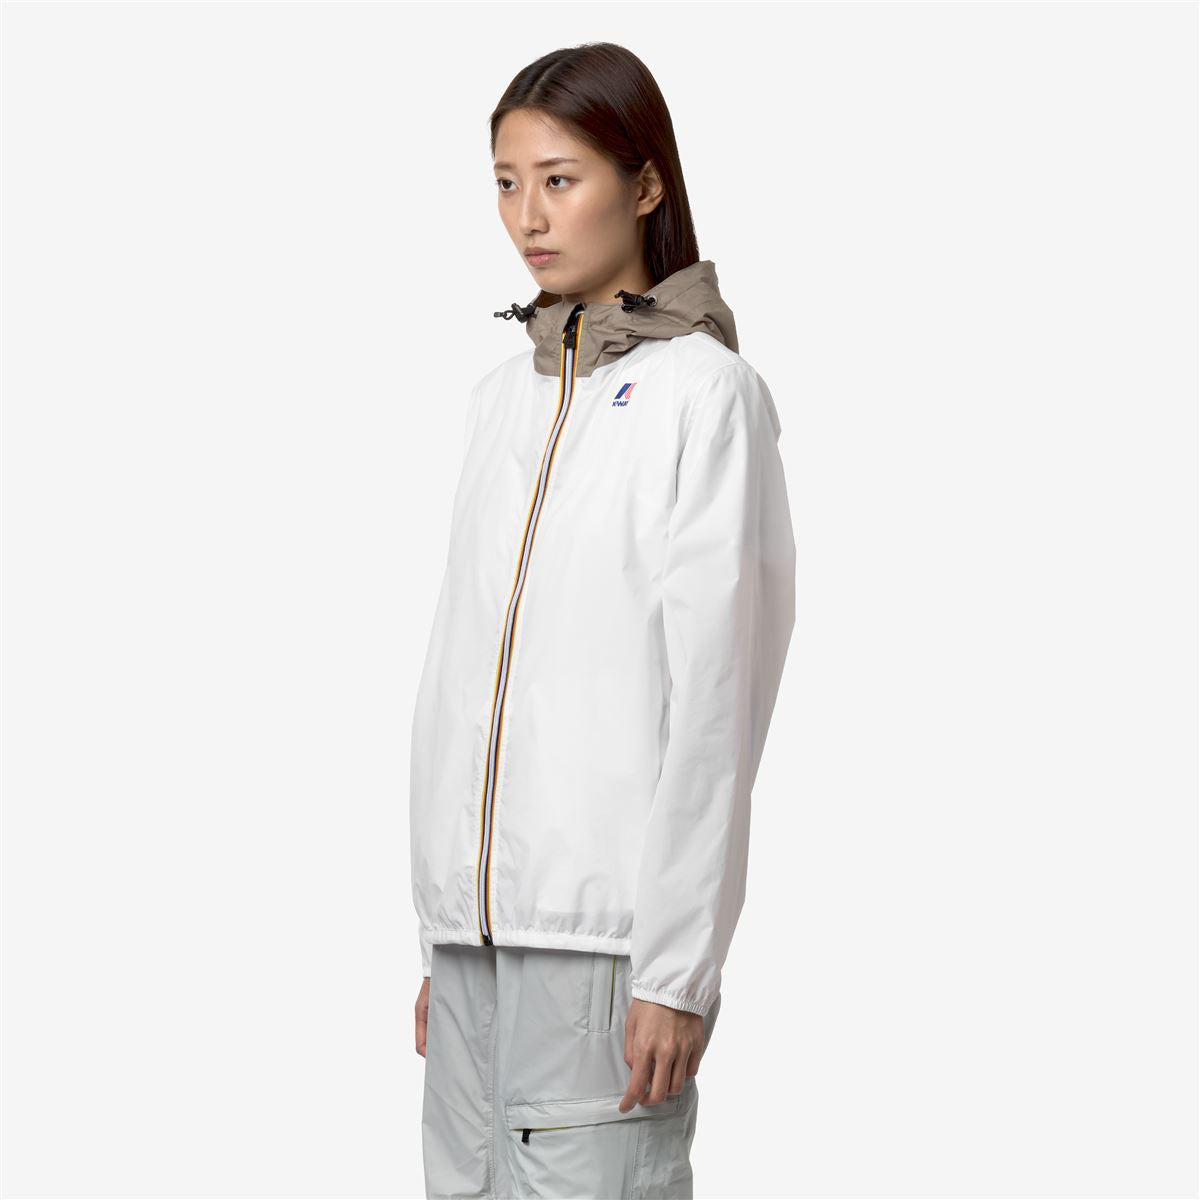 Claude - Unisex Packable Full Zip Waterproof  Rain Jacket in White - Beige Taupe